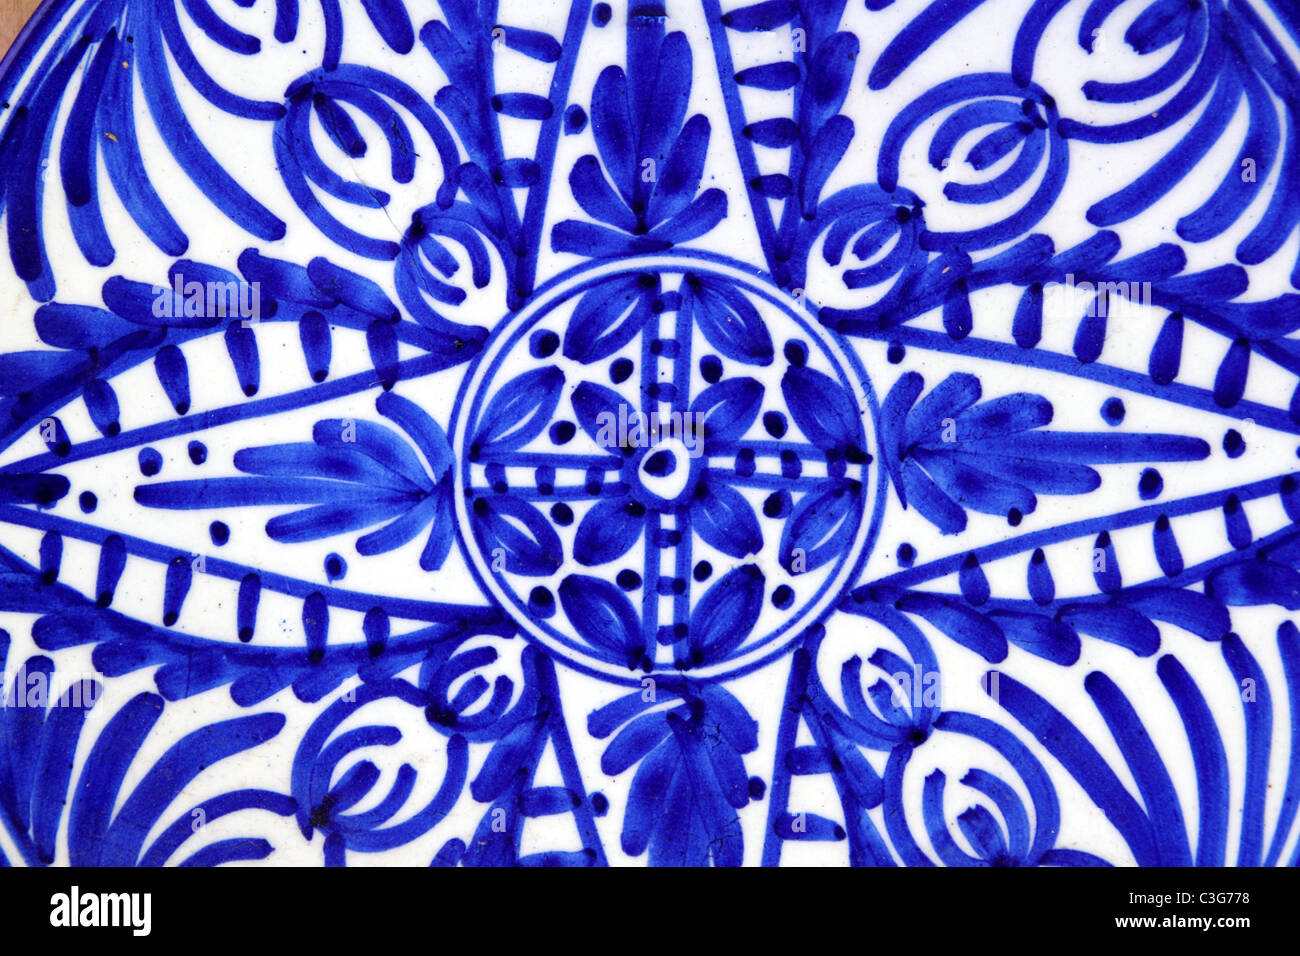 Plaque céramique peint en bleu de l'Espagne typique de formes Banque D'Images